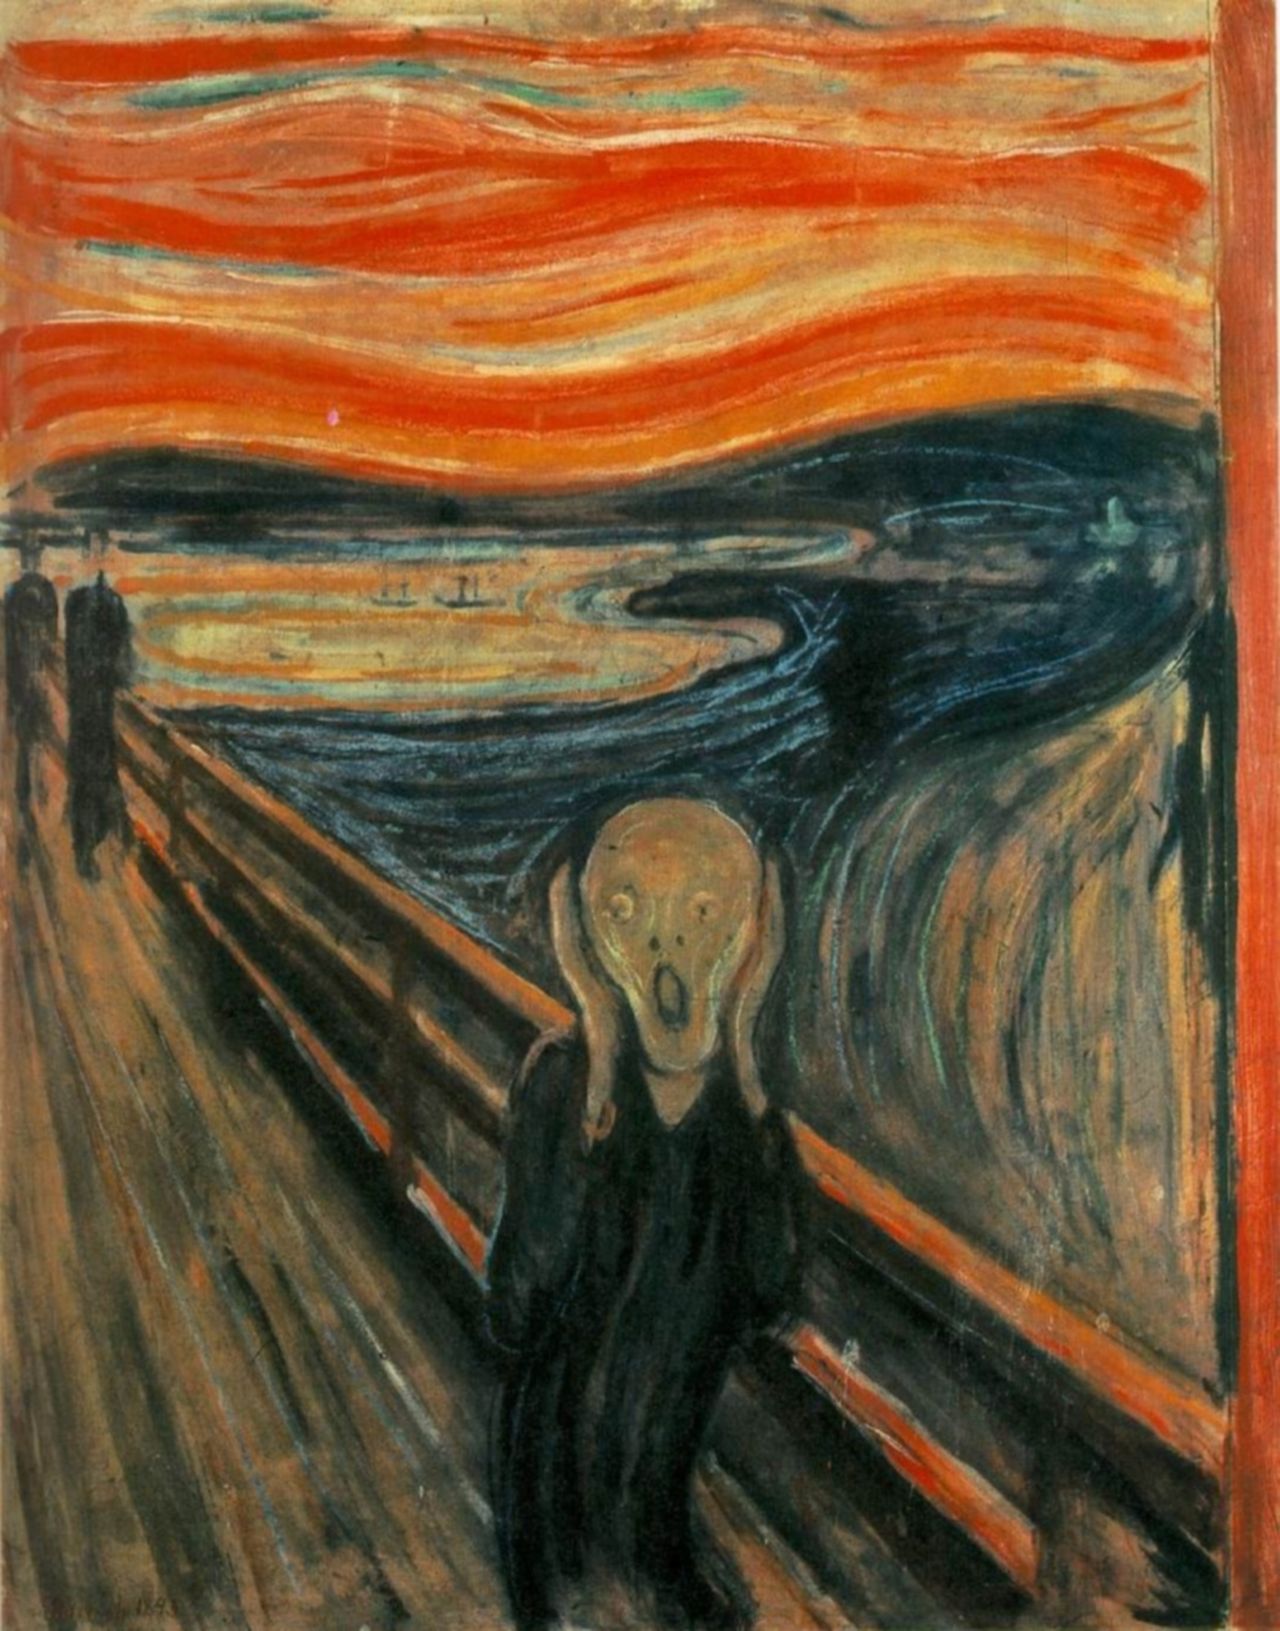 Εικόνα 1. Edvard Munch, The Scream, 1893, National Gallery and Munch Museum, Oslo